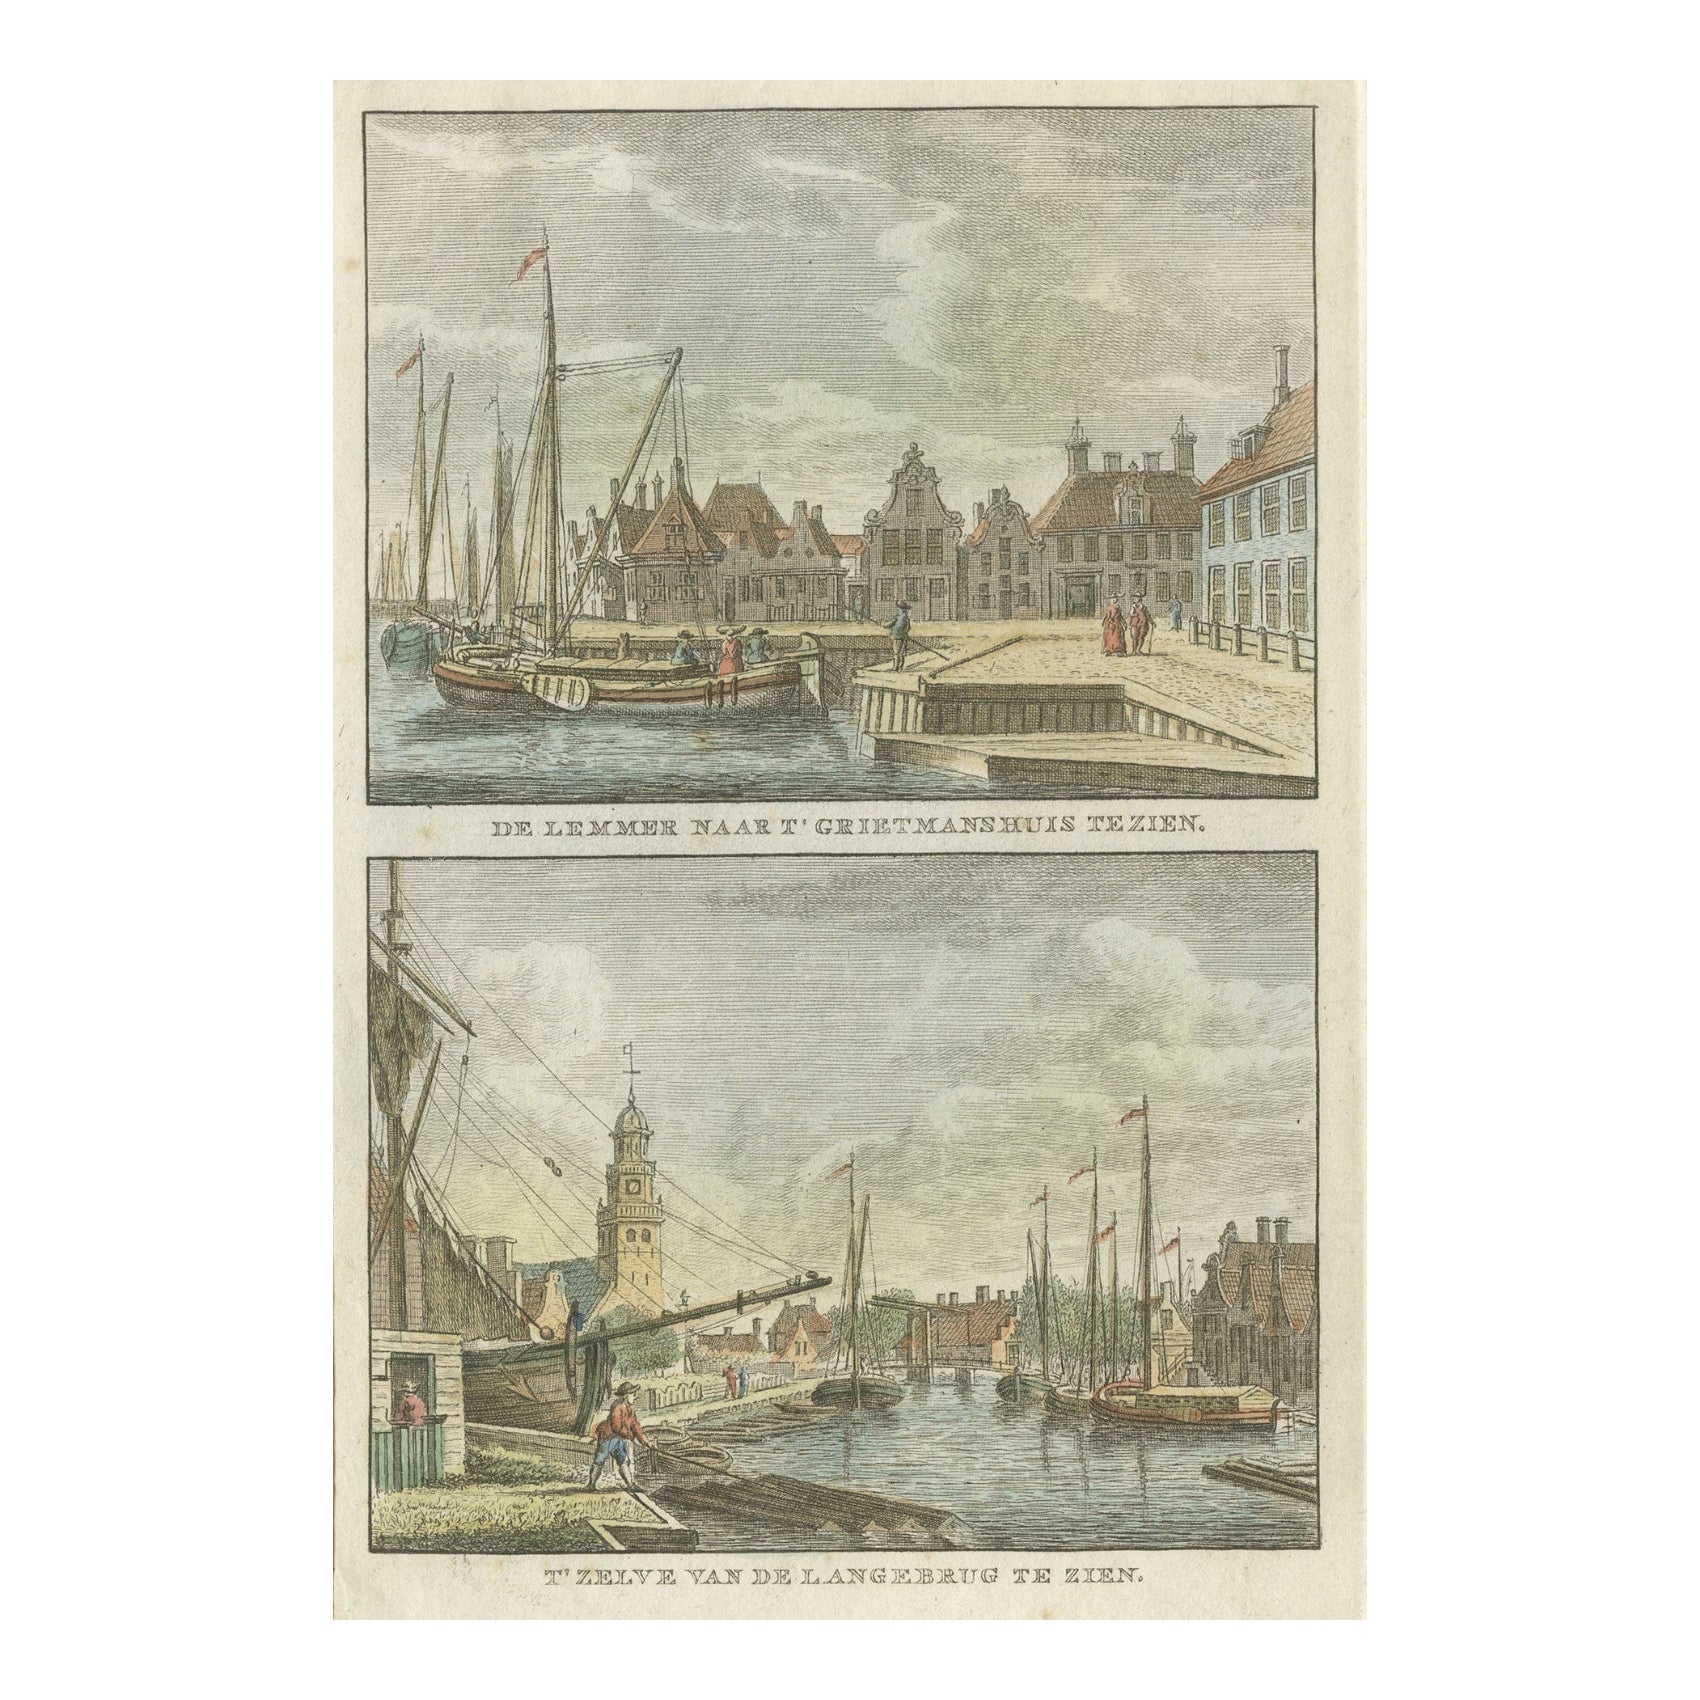 Impression ancienne de Lemmer, Grietmanshuis, Friesland, Pays-Bas, vers 1790